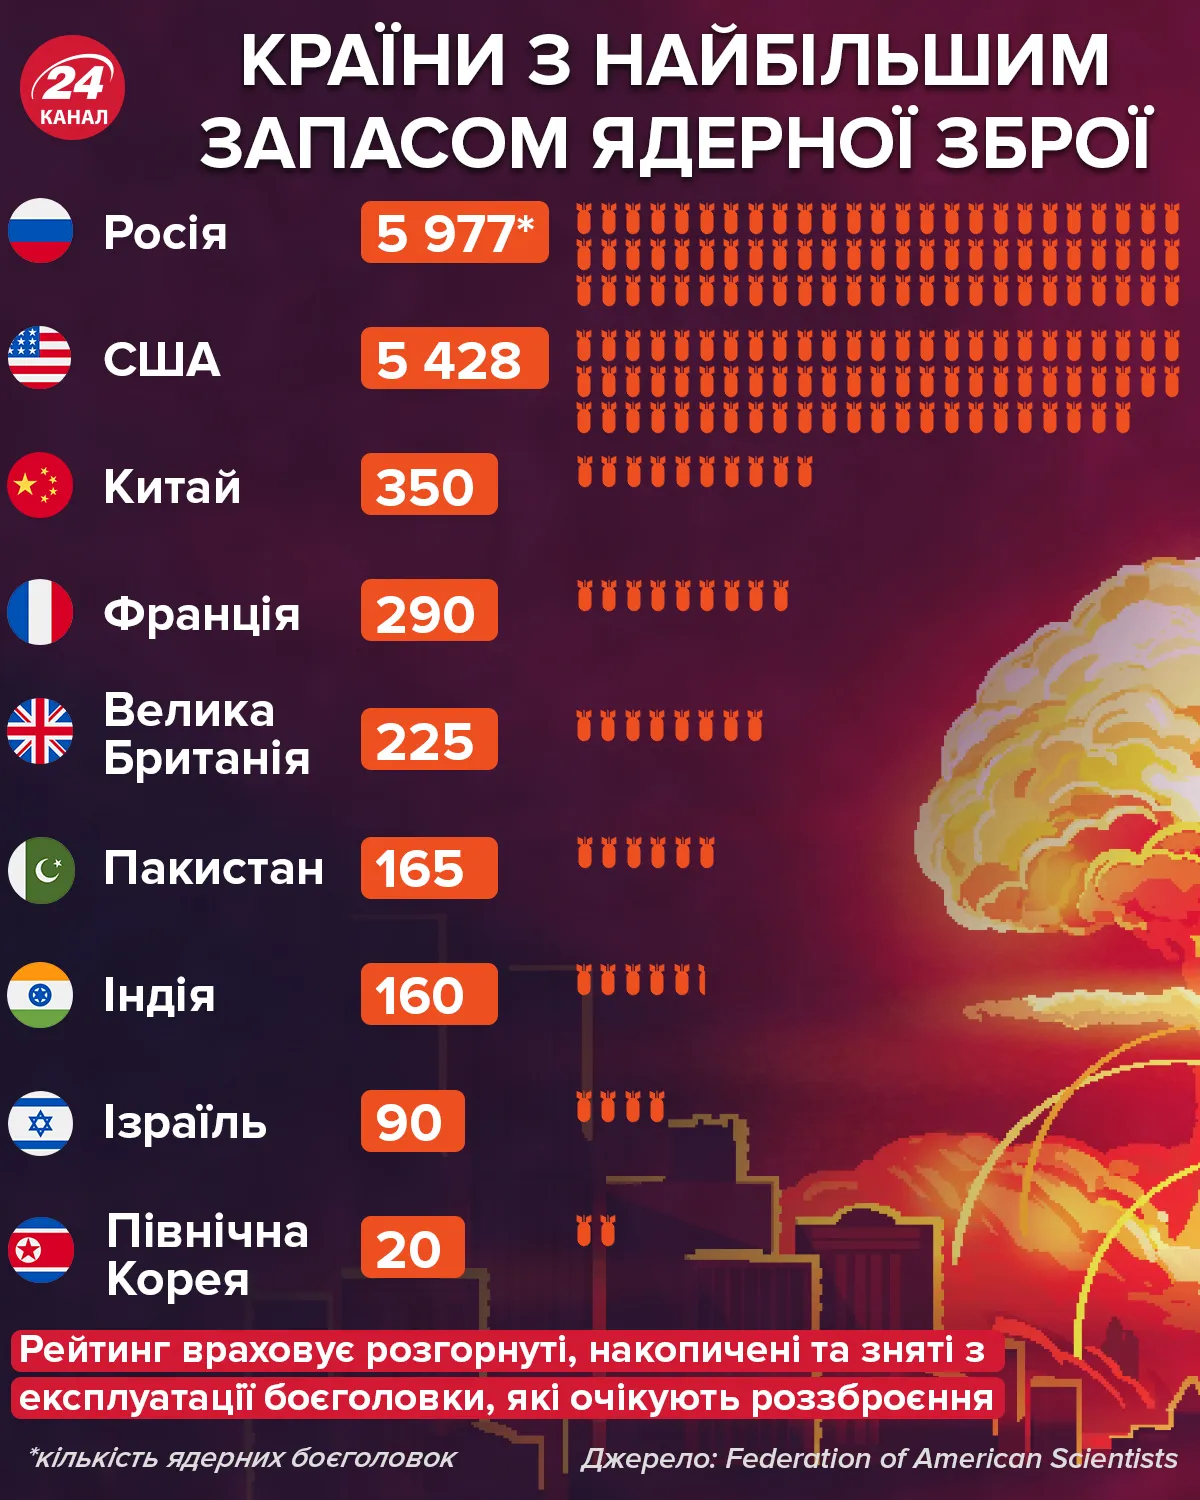 Ядерное оружие: в каких странах больше всего